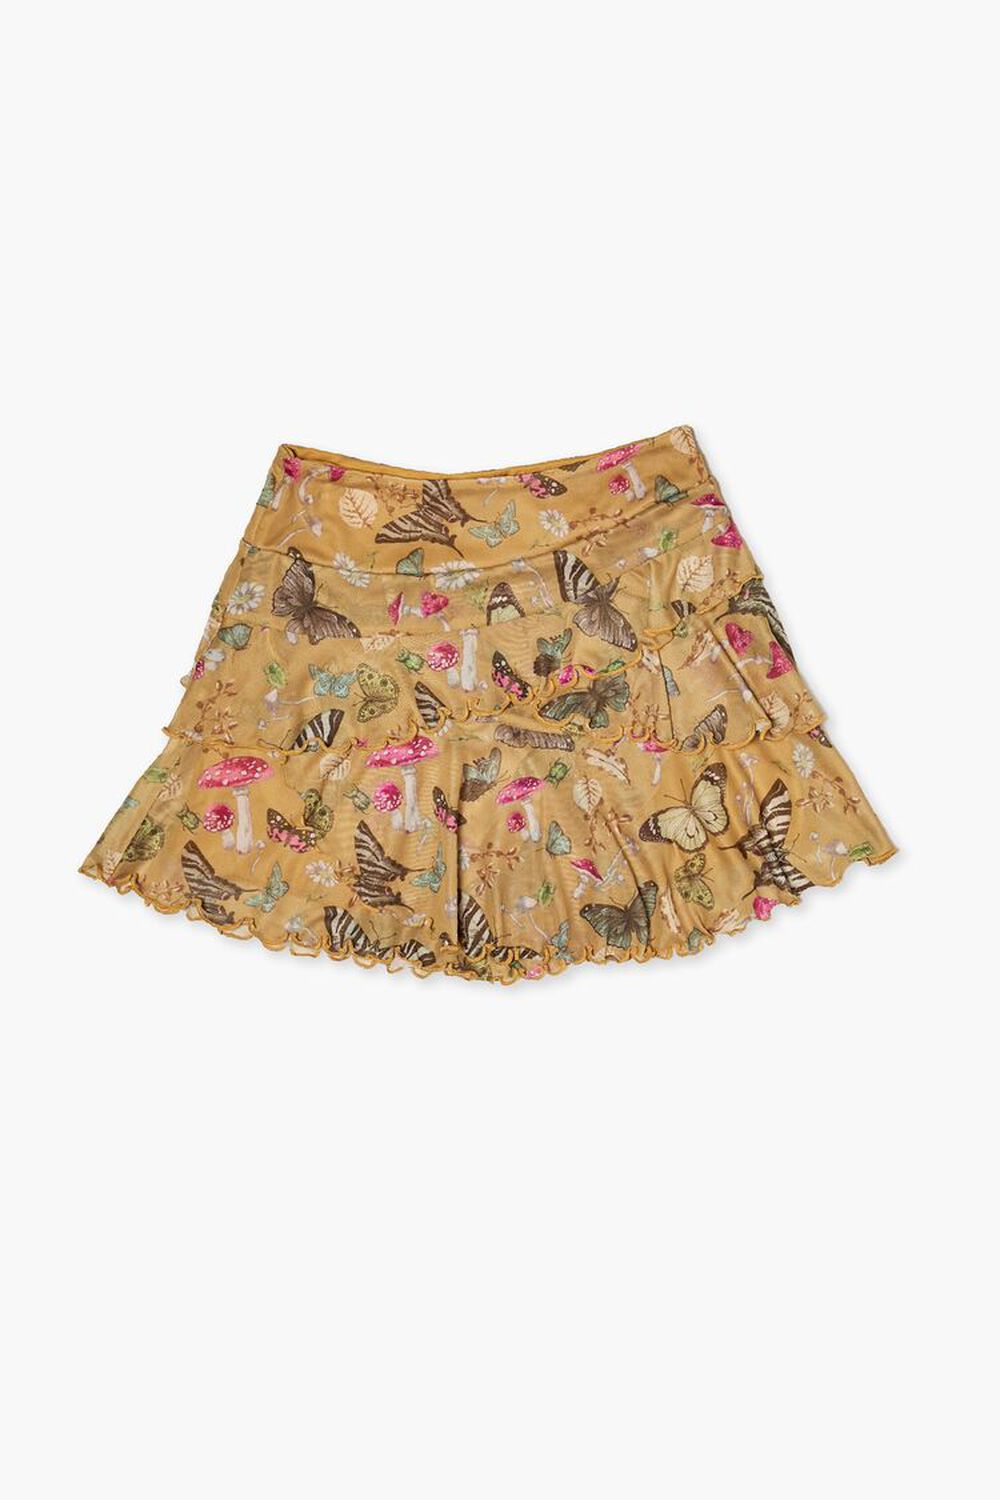 AMBER/MULTI Girls Butterfly Print Skirt (Kids), image 1